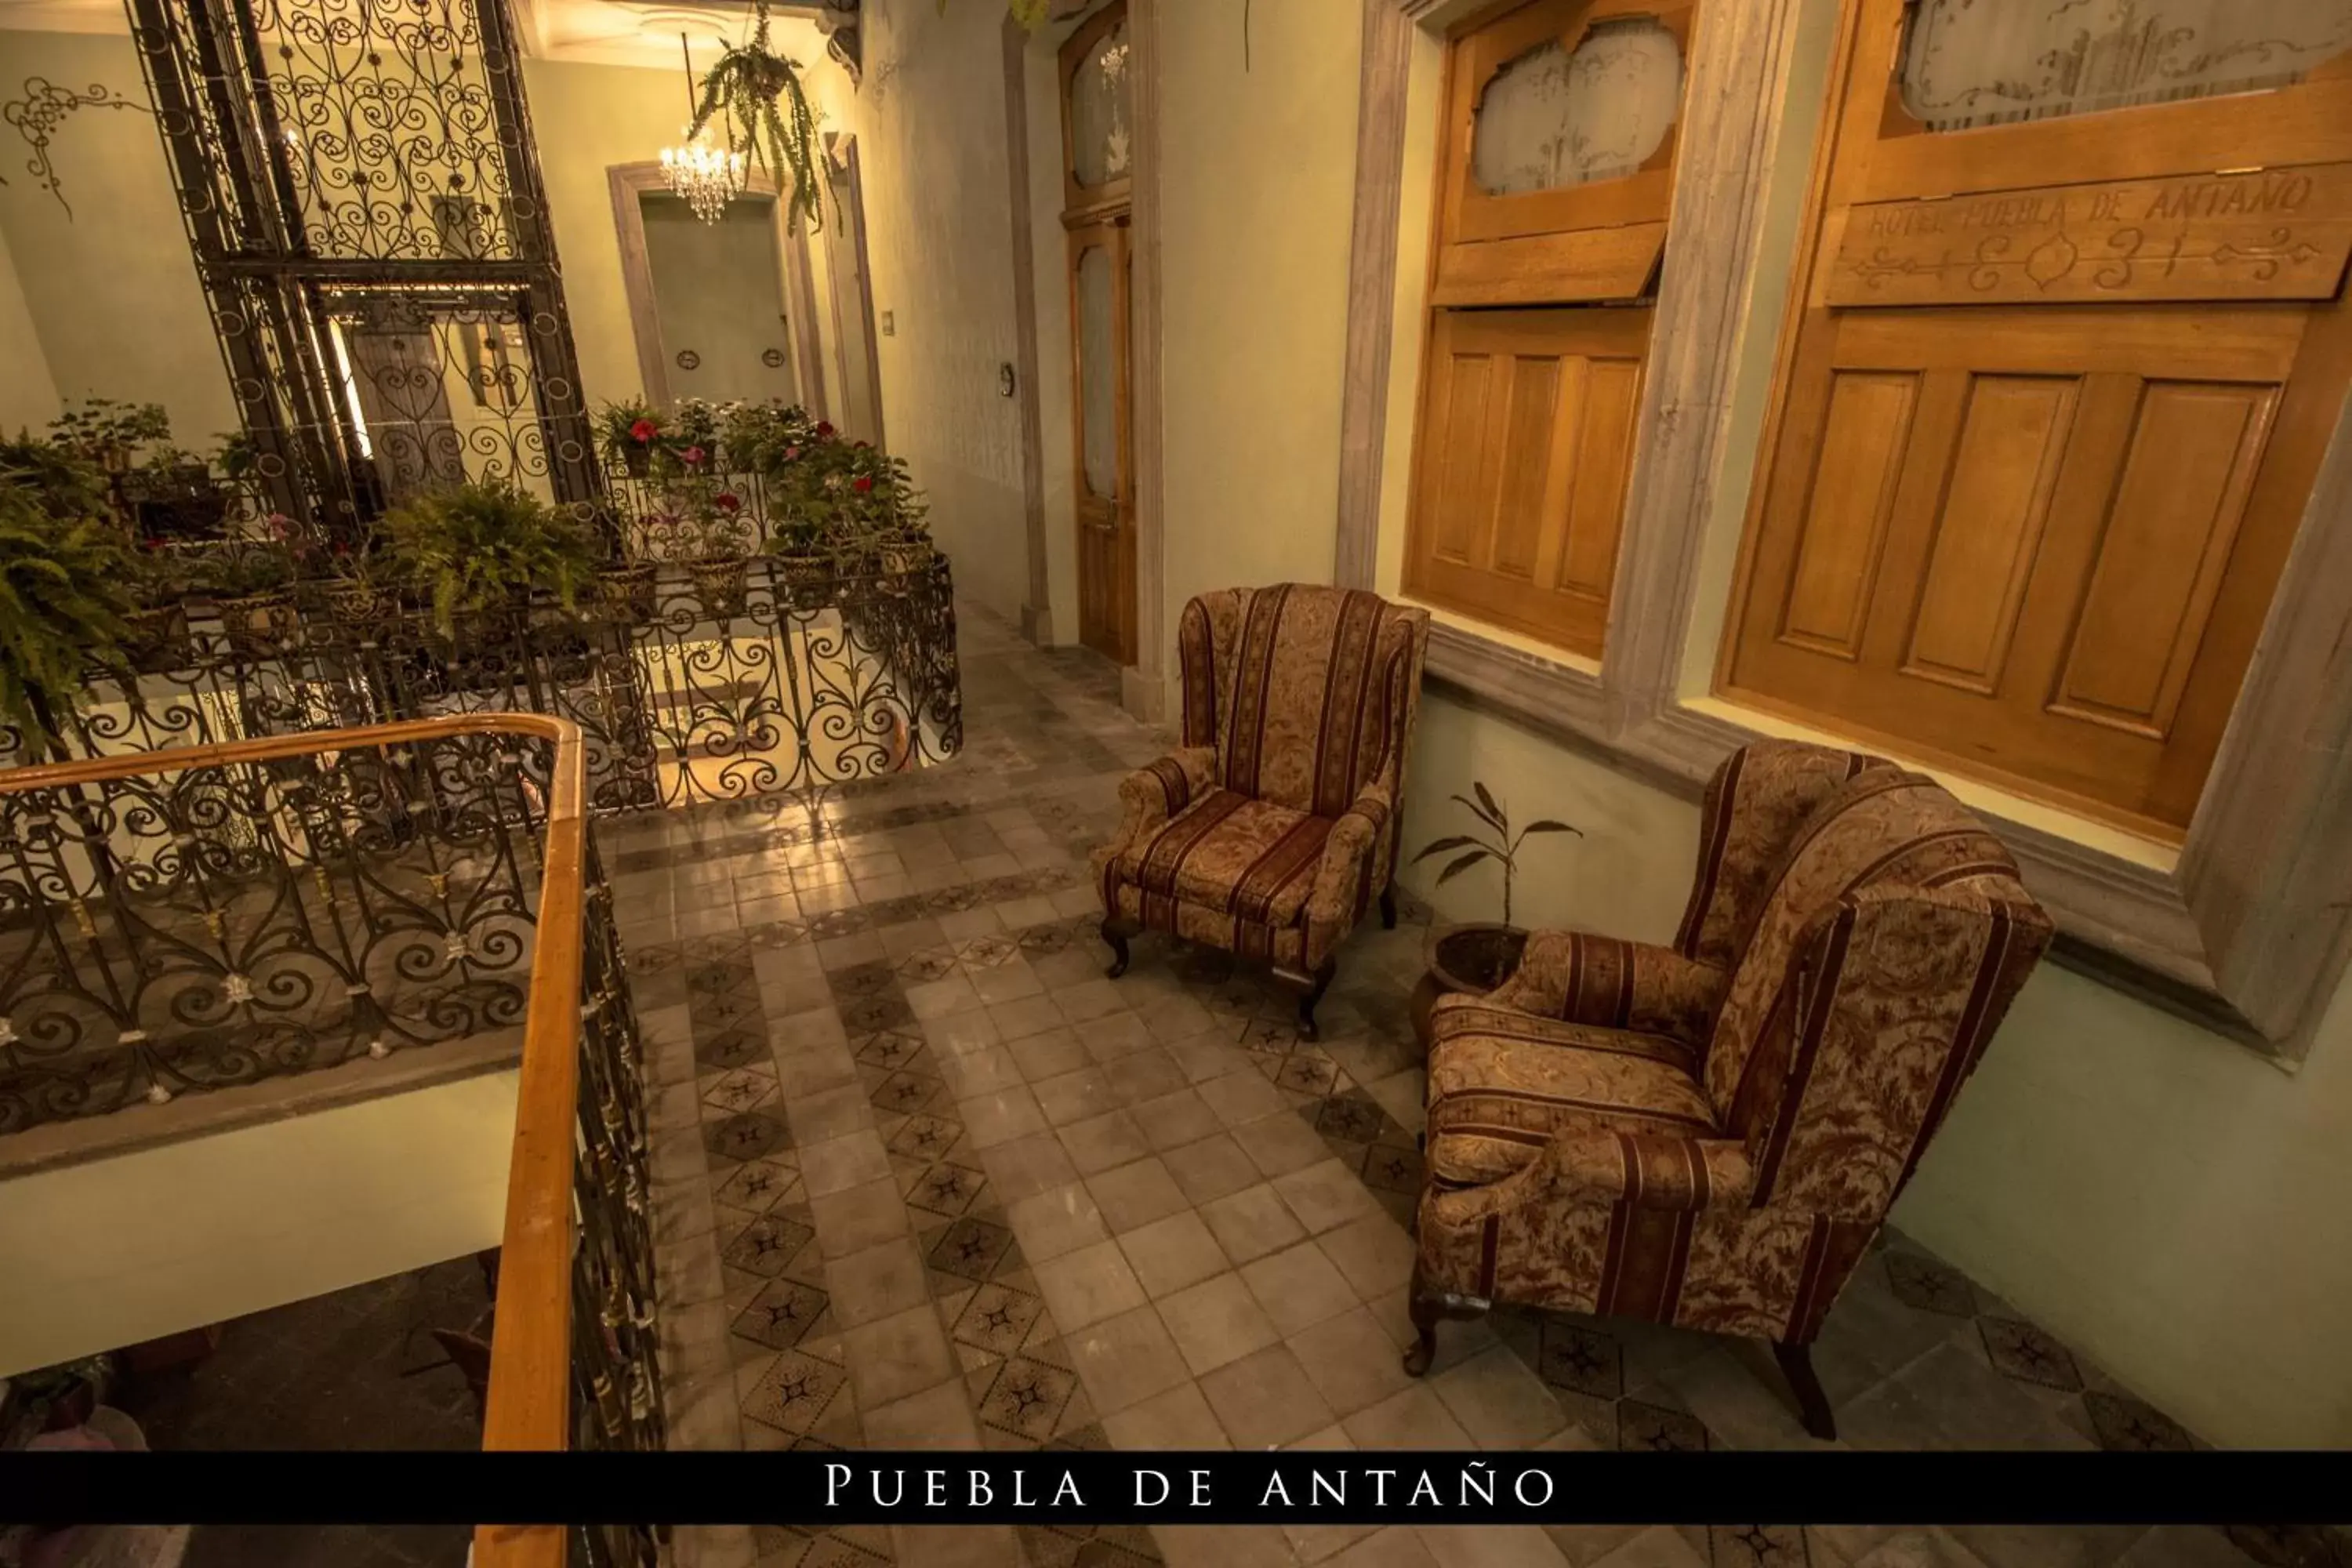 Area and facilities, Seating Area in Hotel Puebla de Antaño